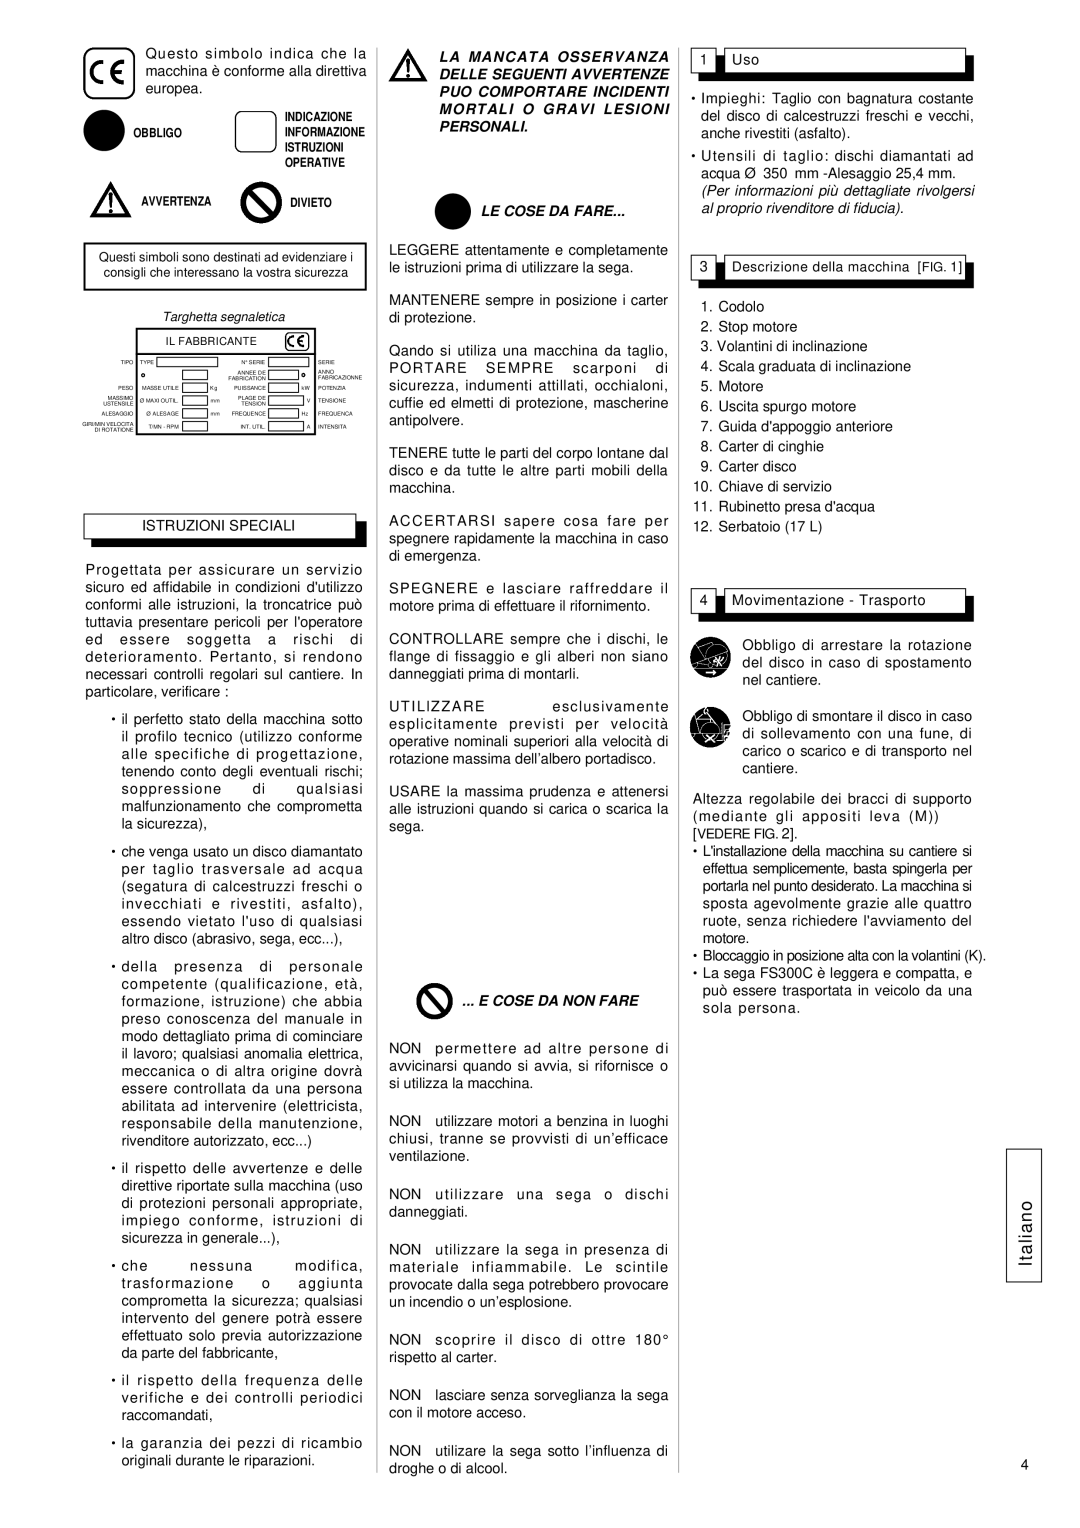 Husqvarna FS 305, FS309 manuel dutilisation Italiano, Le Cose Da Fare, E Cose Da Non Fare 